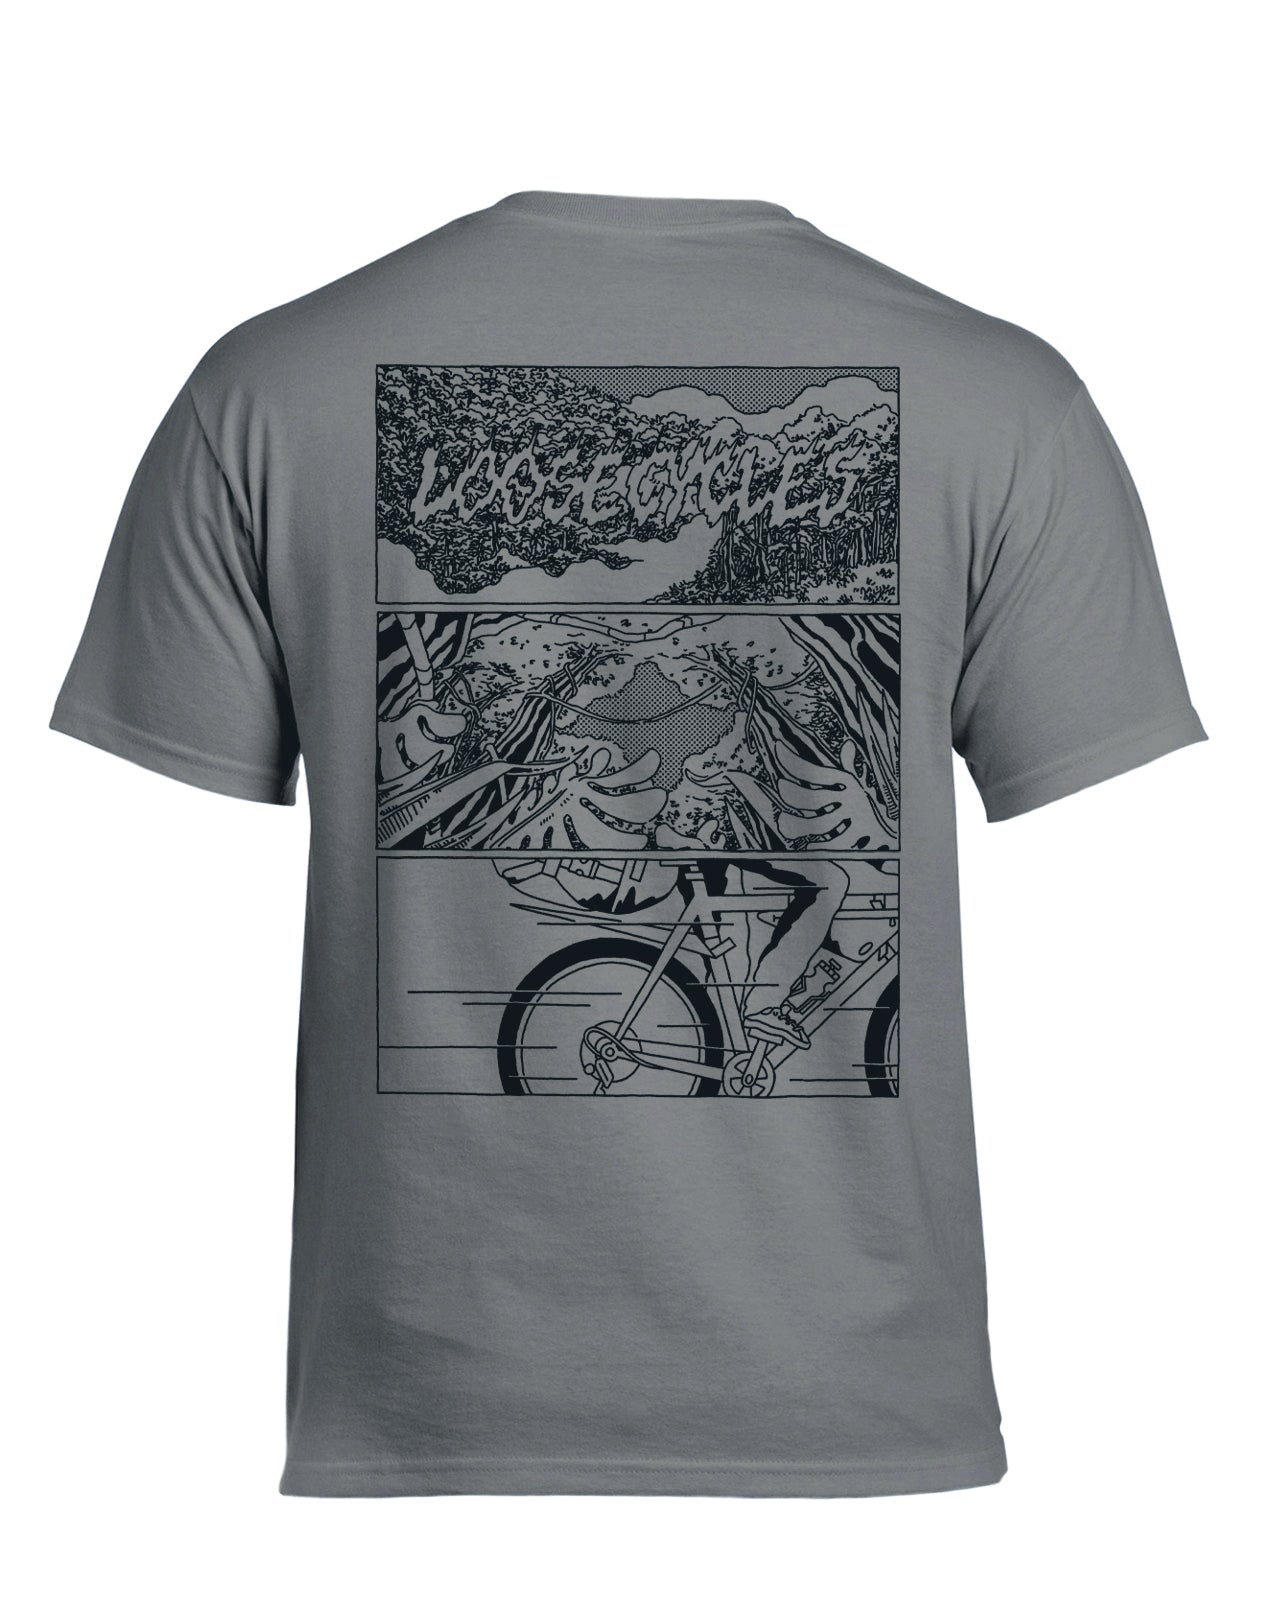 Loose Cycles - Jungle T-Shirt